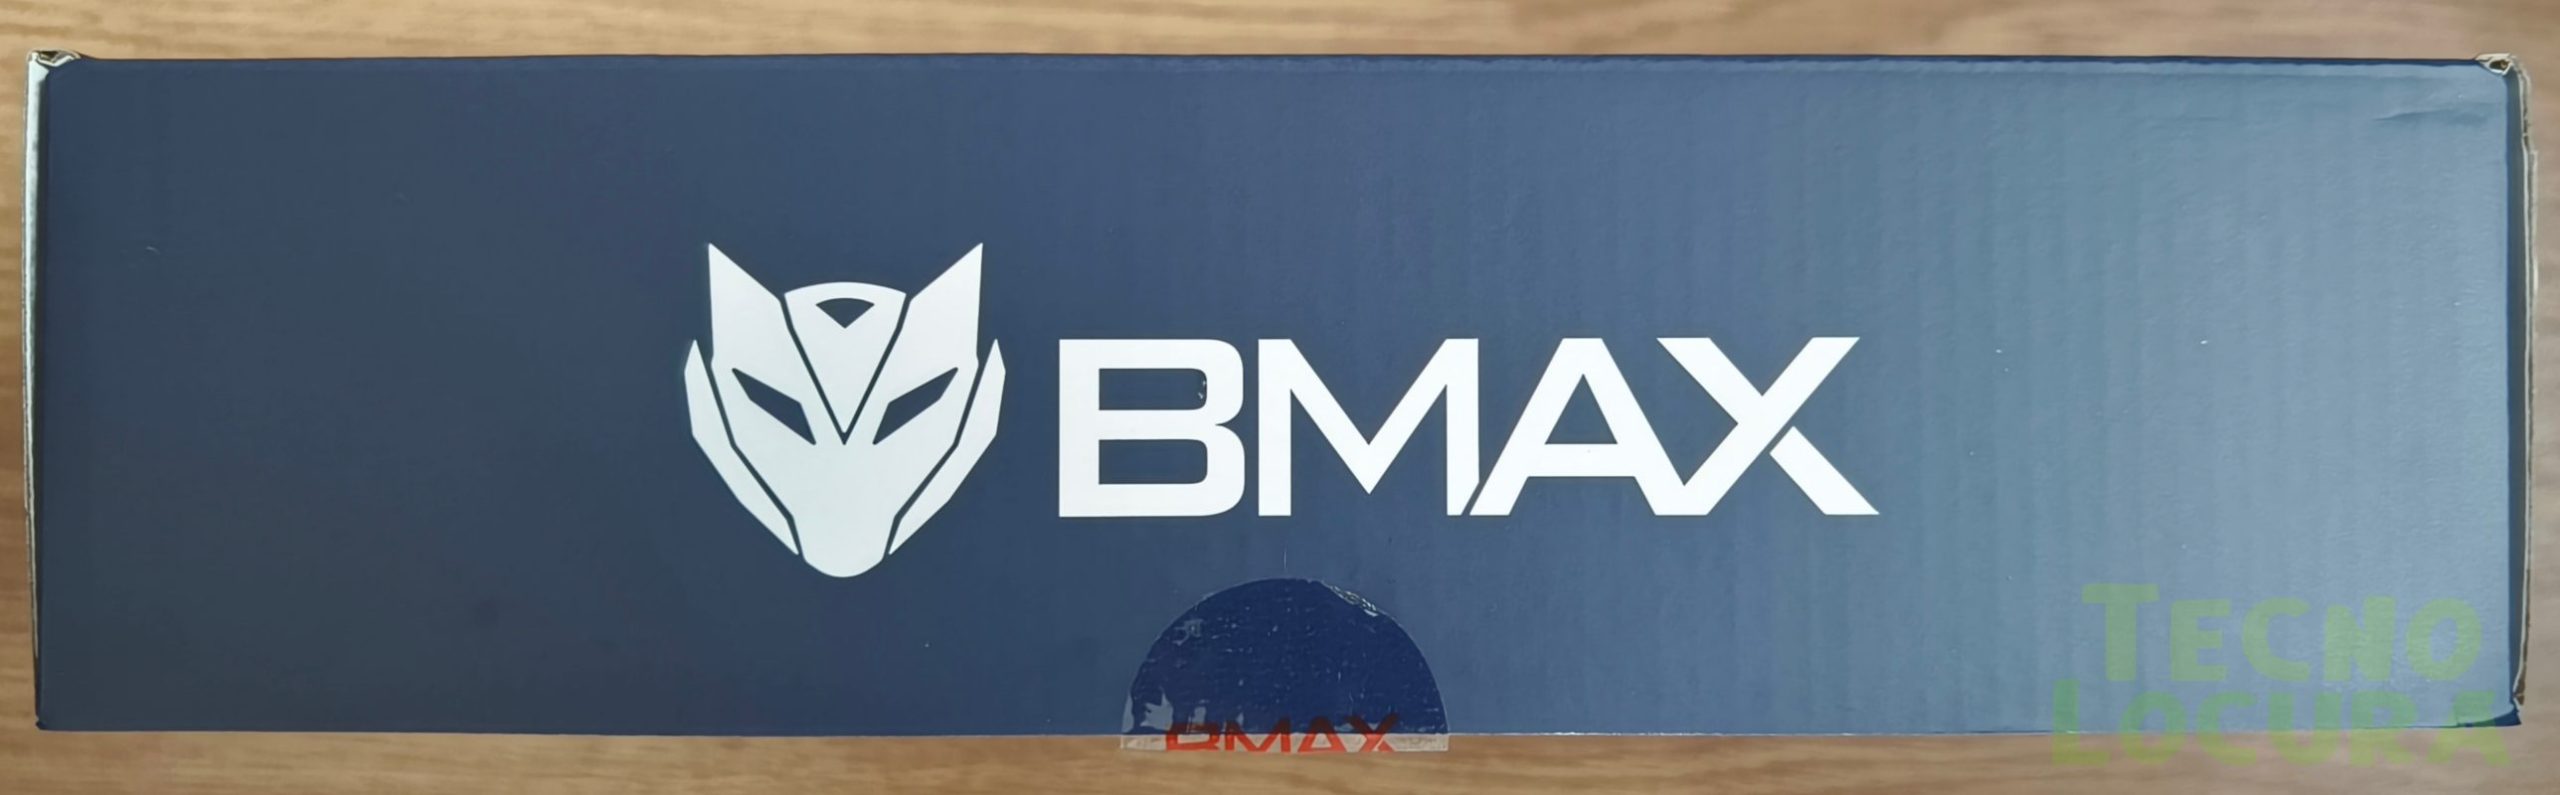 BMAX B7 Pro TECNOLOCURA - Mini PC potente en la palma de tu mano